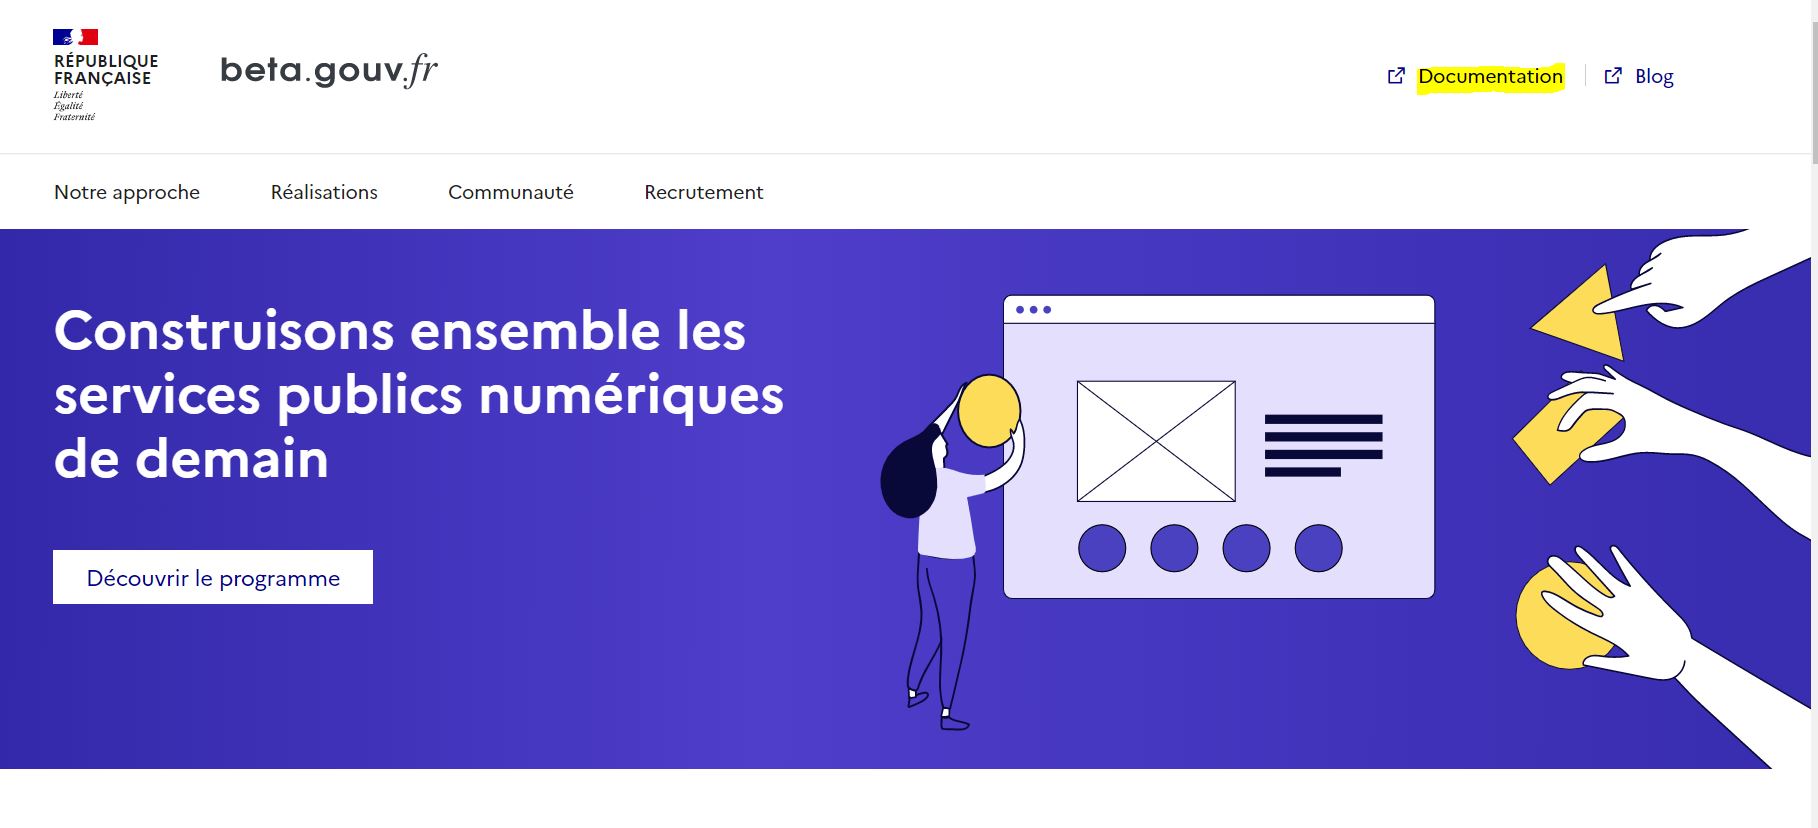 Landing page beta.gouv.fr